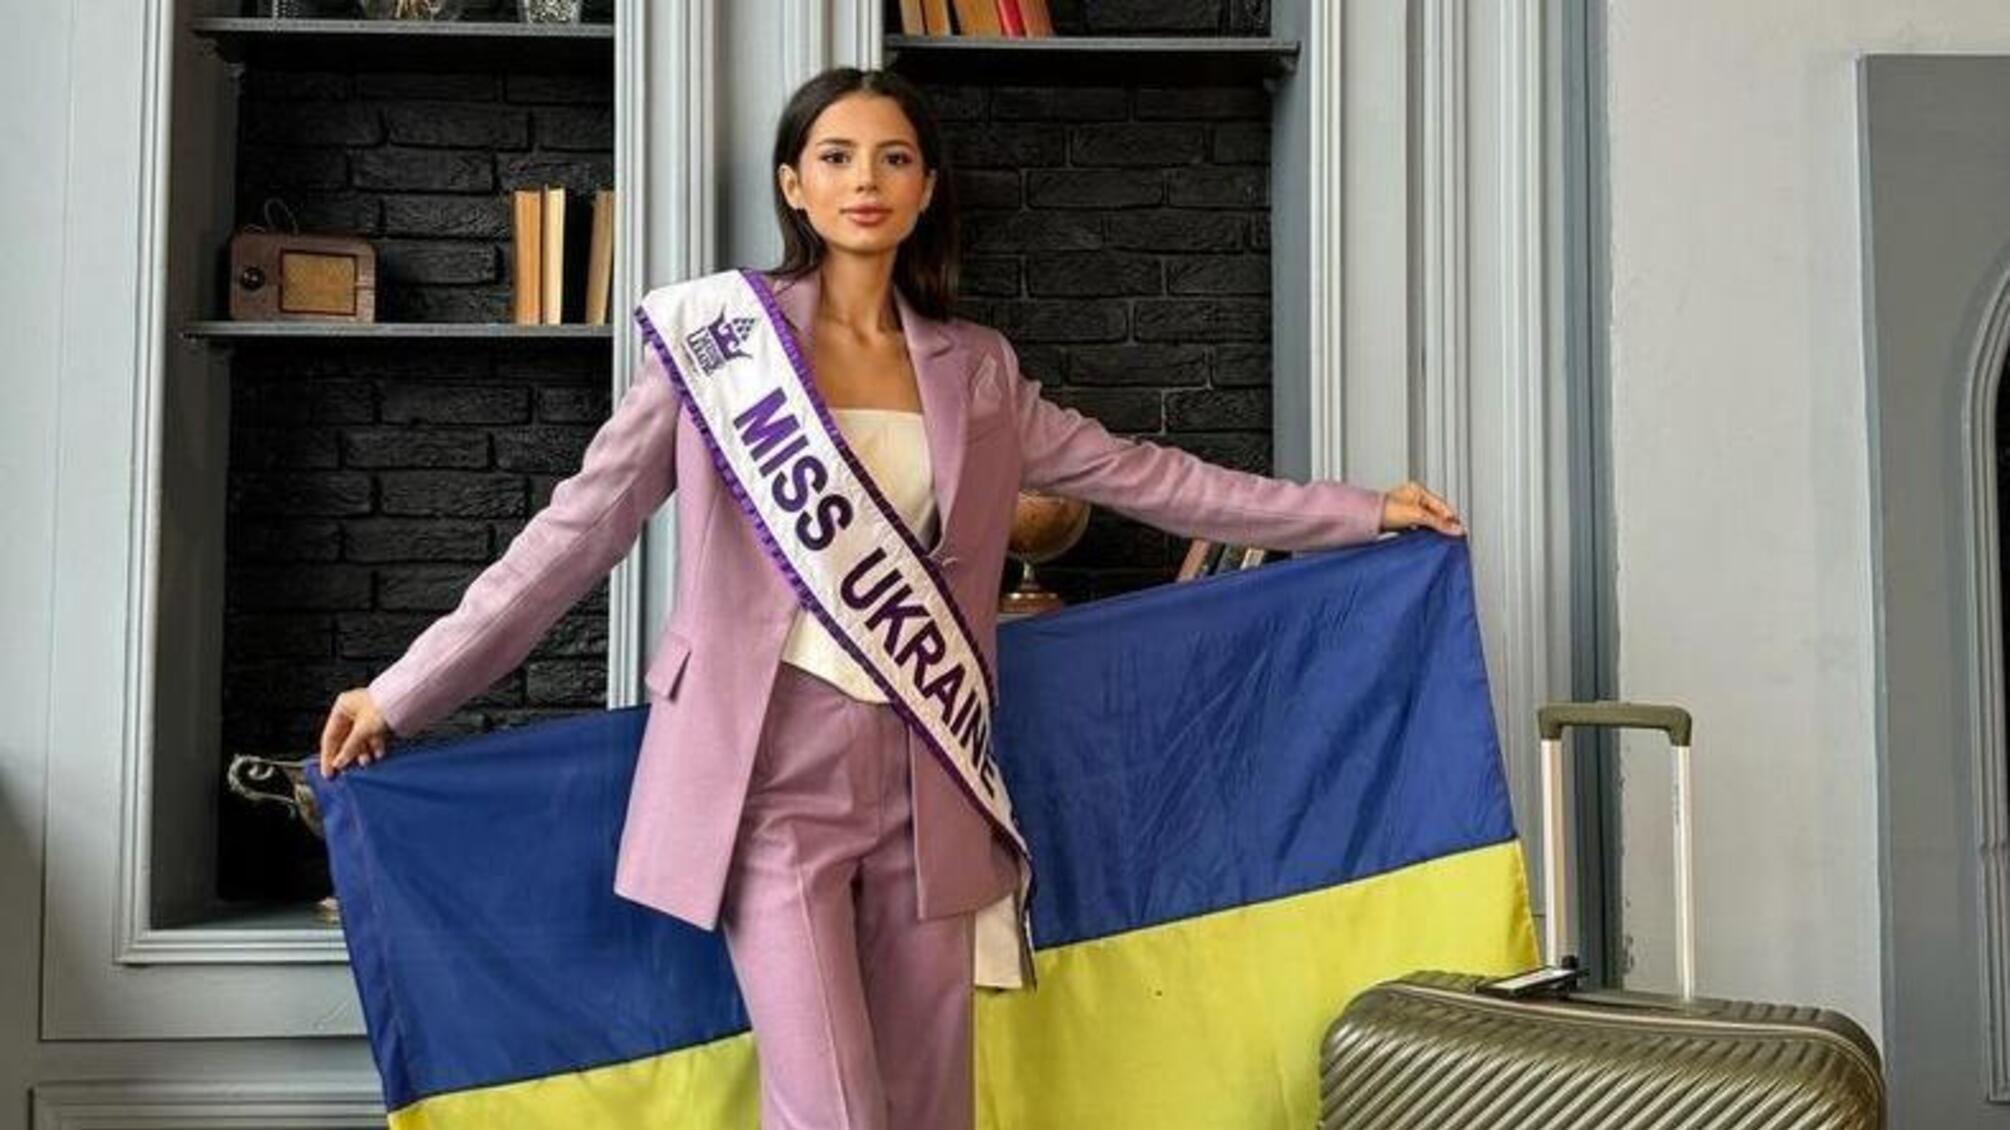 Росію усунено від участі в 'Міс Світу': рішення оргкомітету після скандалу на 'Міс Європа'